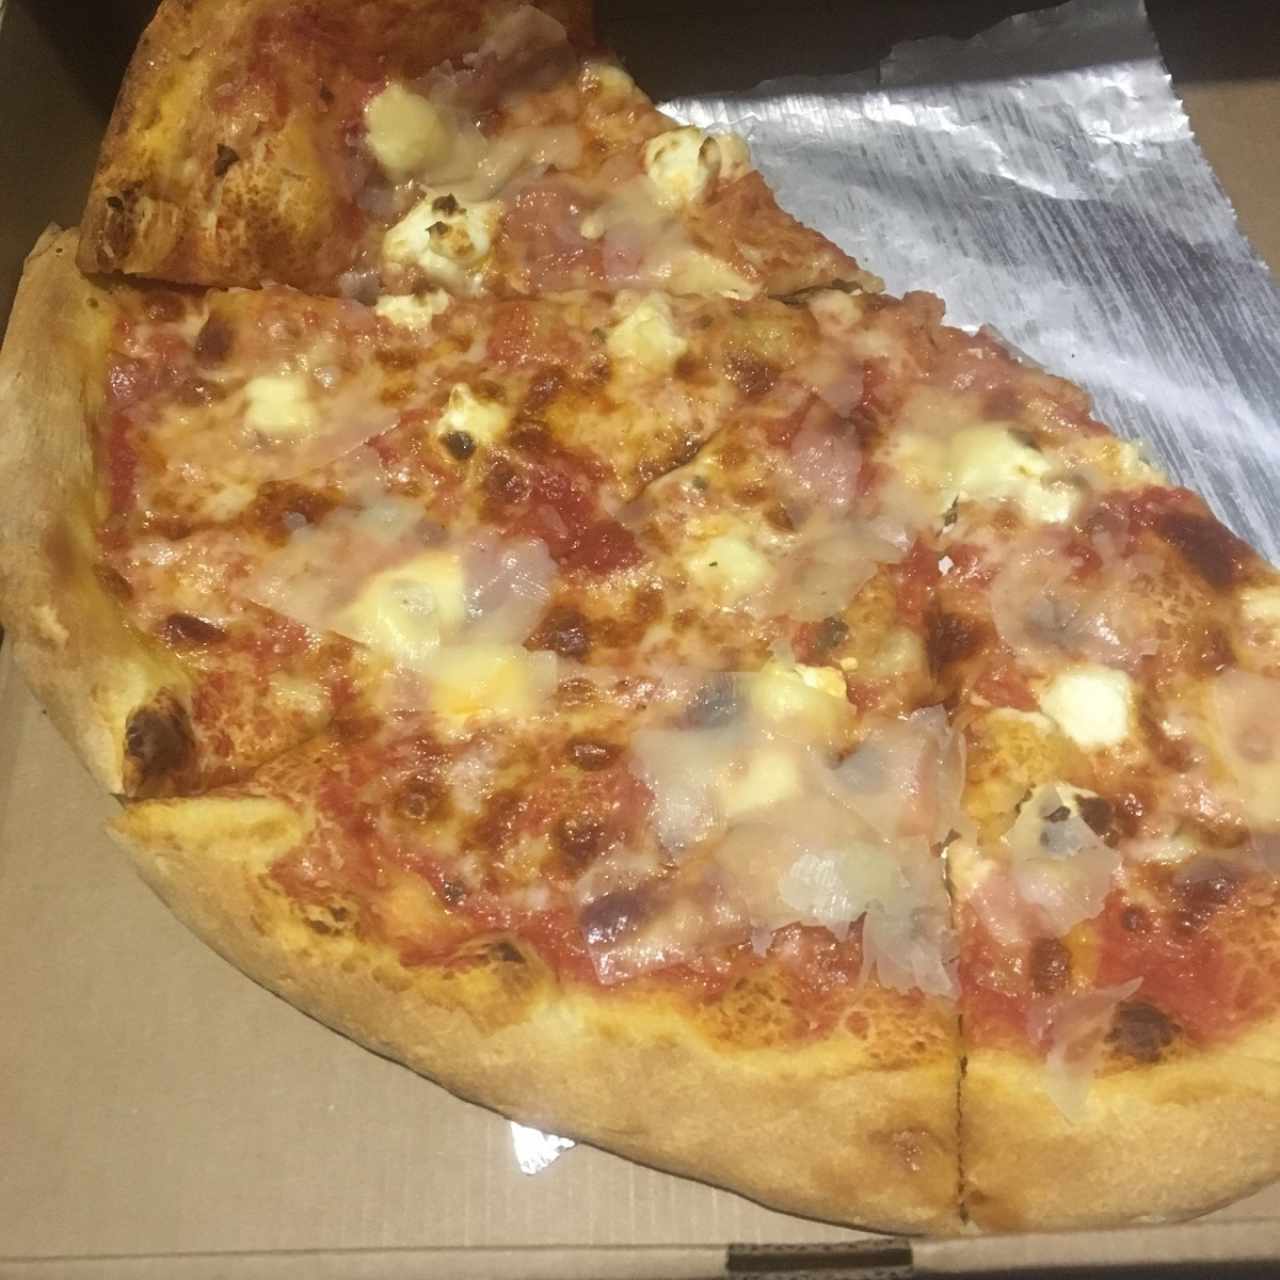 Pizza 4Formaggio